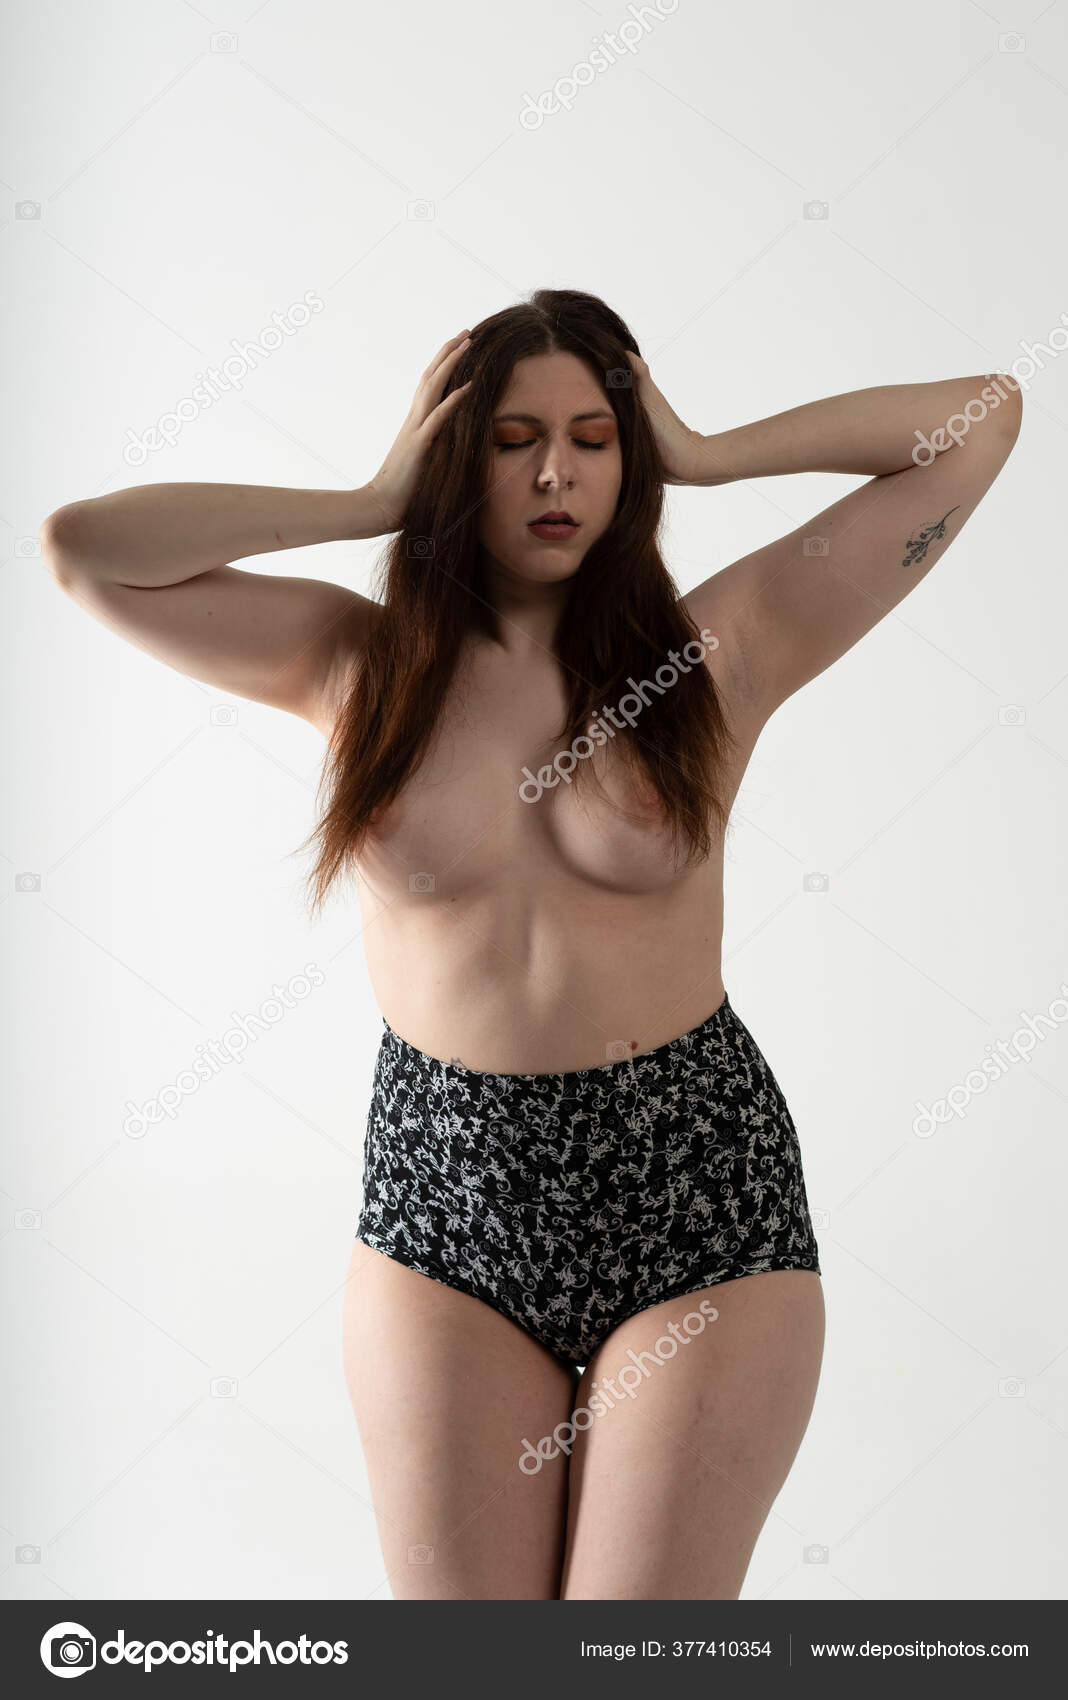 https://st3n.depositphotos.com/10086424/37741/i/1600/depositphotos_377410354-stock-photo-young-beautiful-girl-posing-nude.jpg